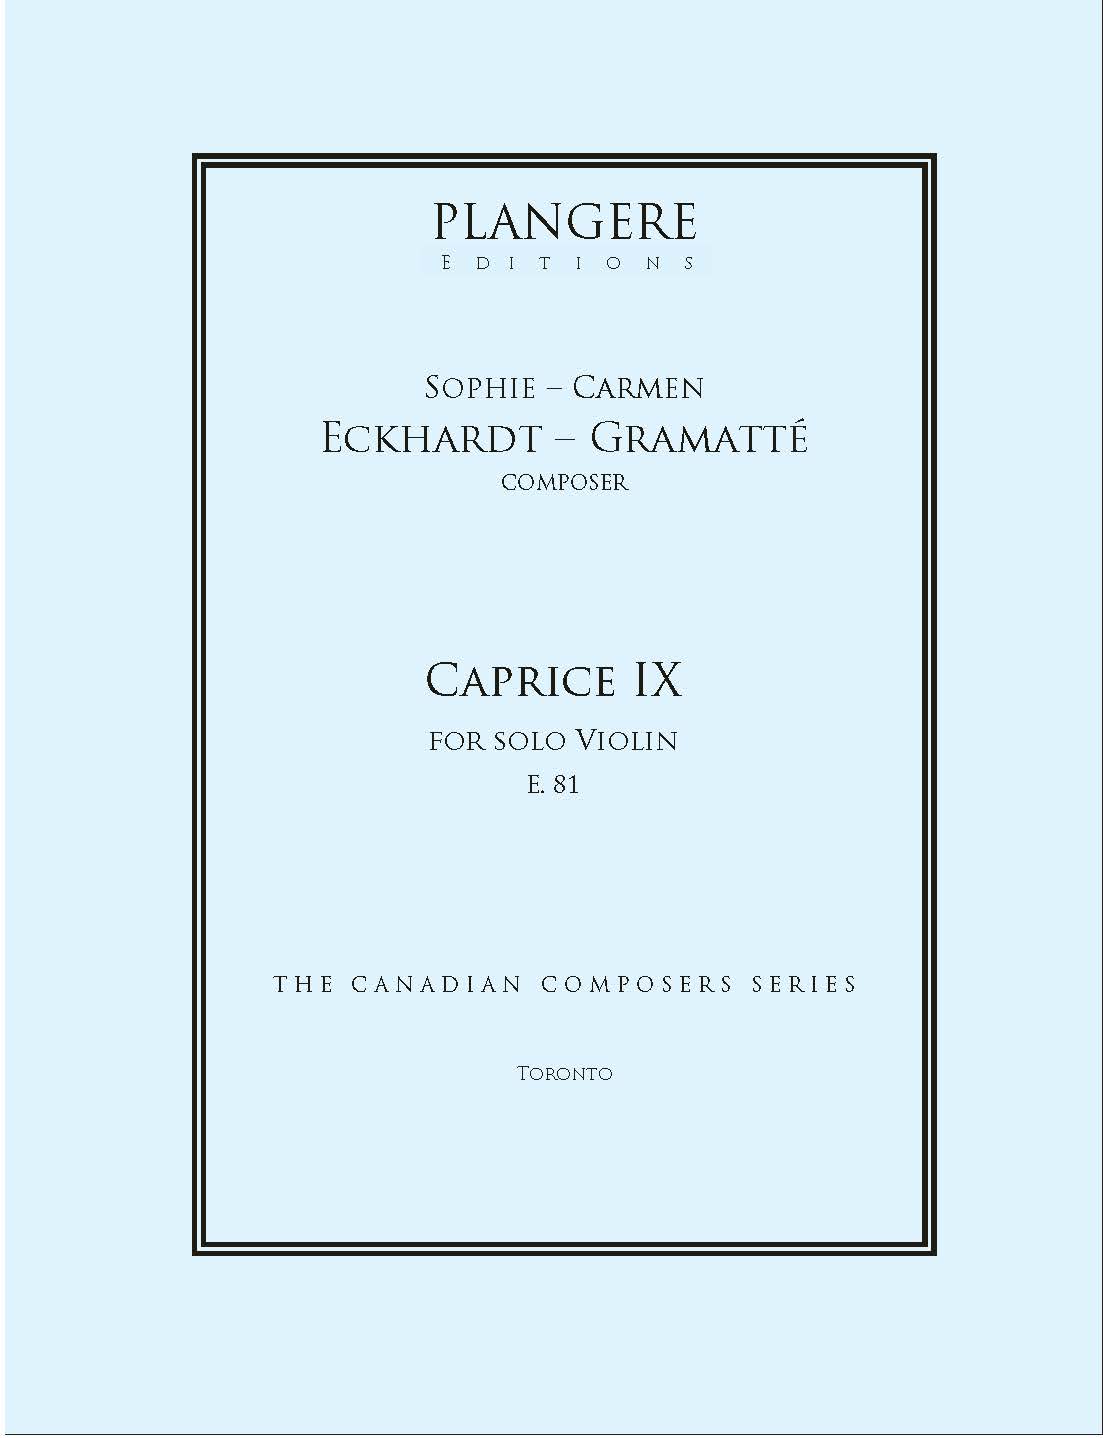 Caprice IX for solo Violin  E.81